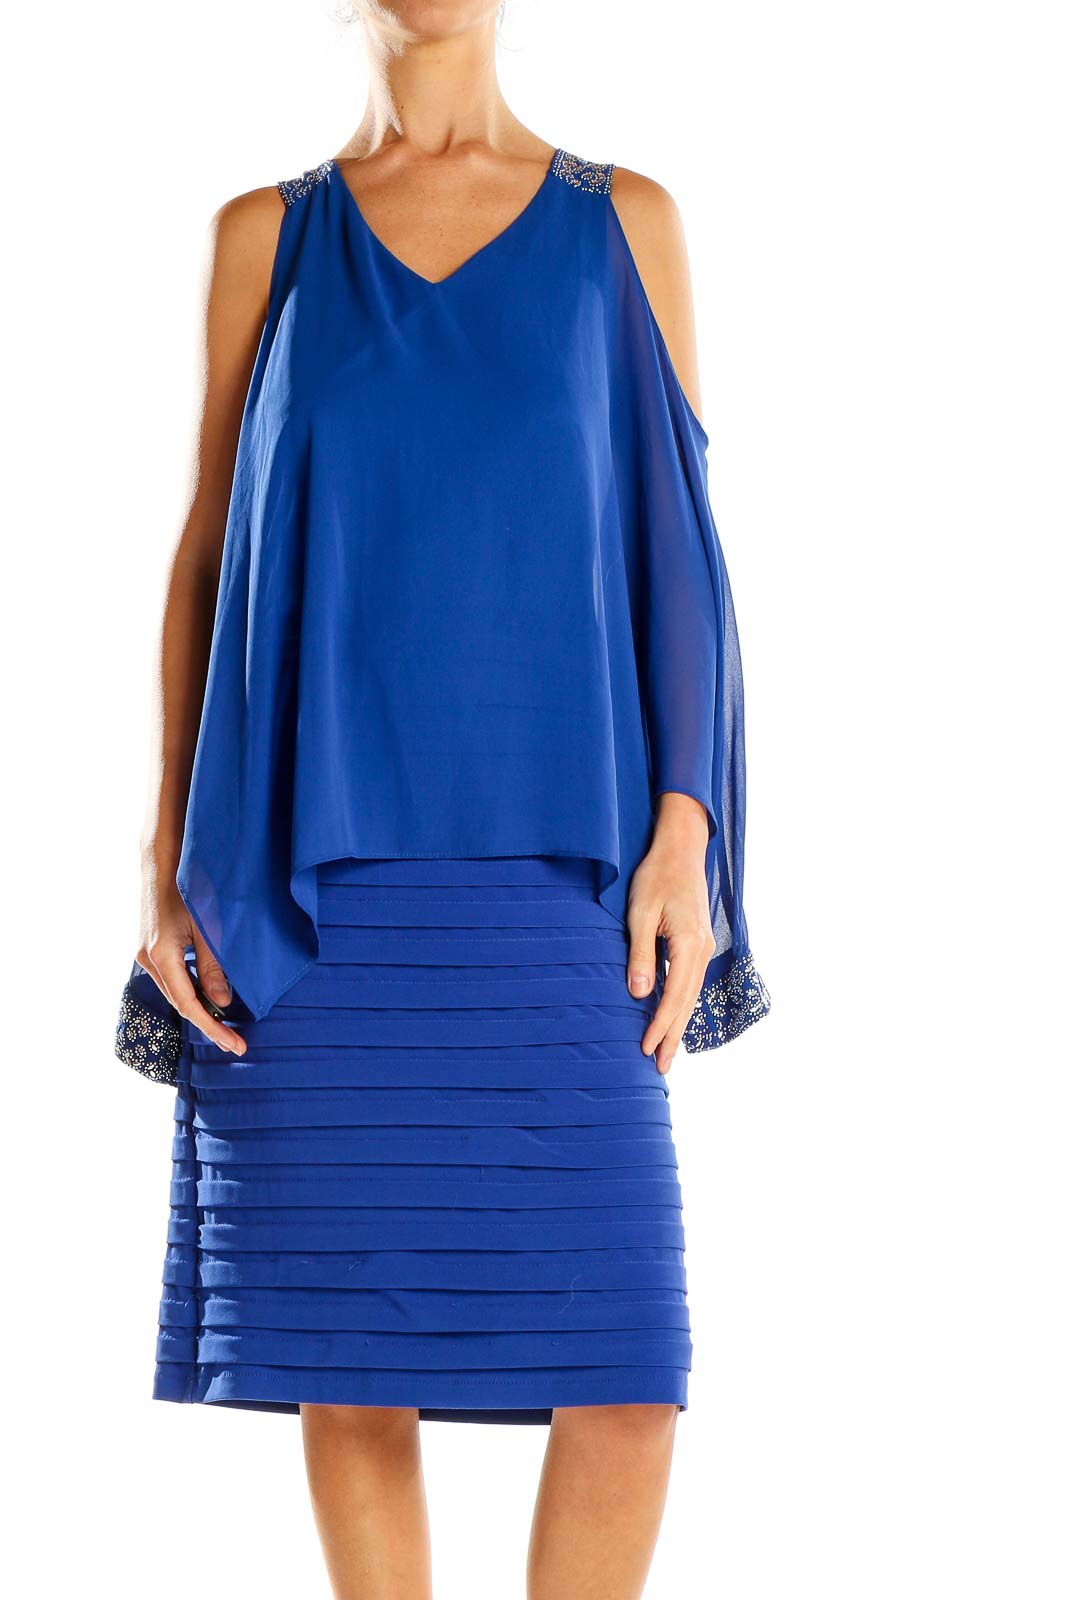 Blue Embellished Sheath Dress Front